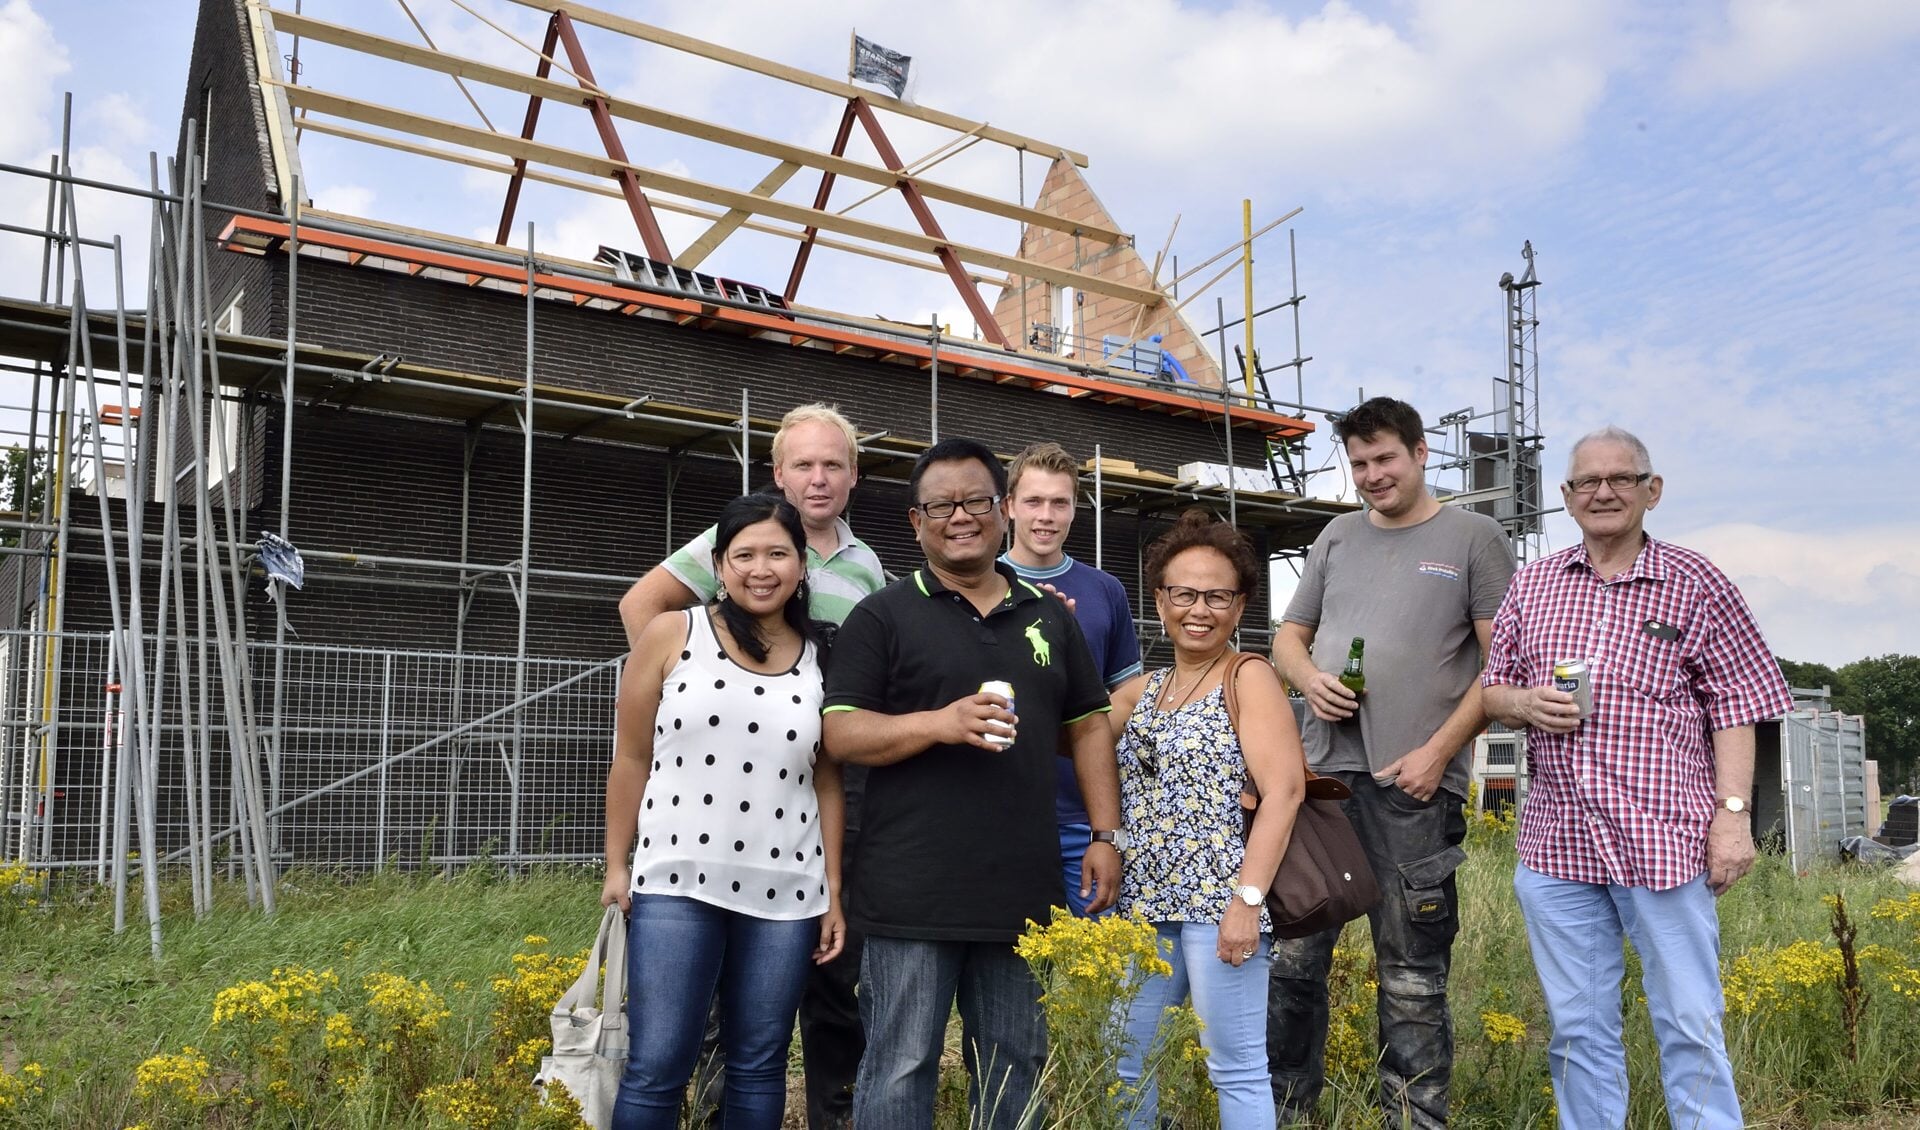 Familie van der Veen samen met de bouwers voor hun huis in aanbouw